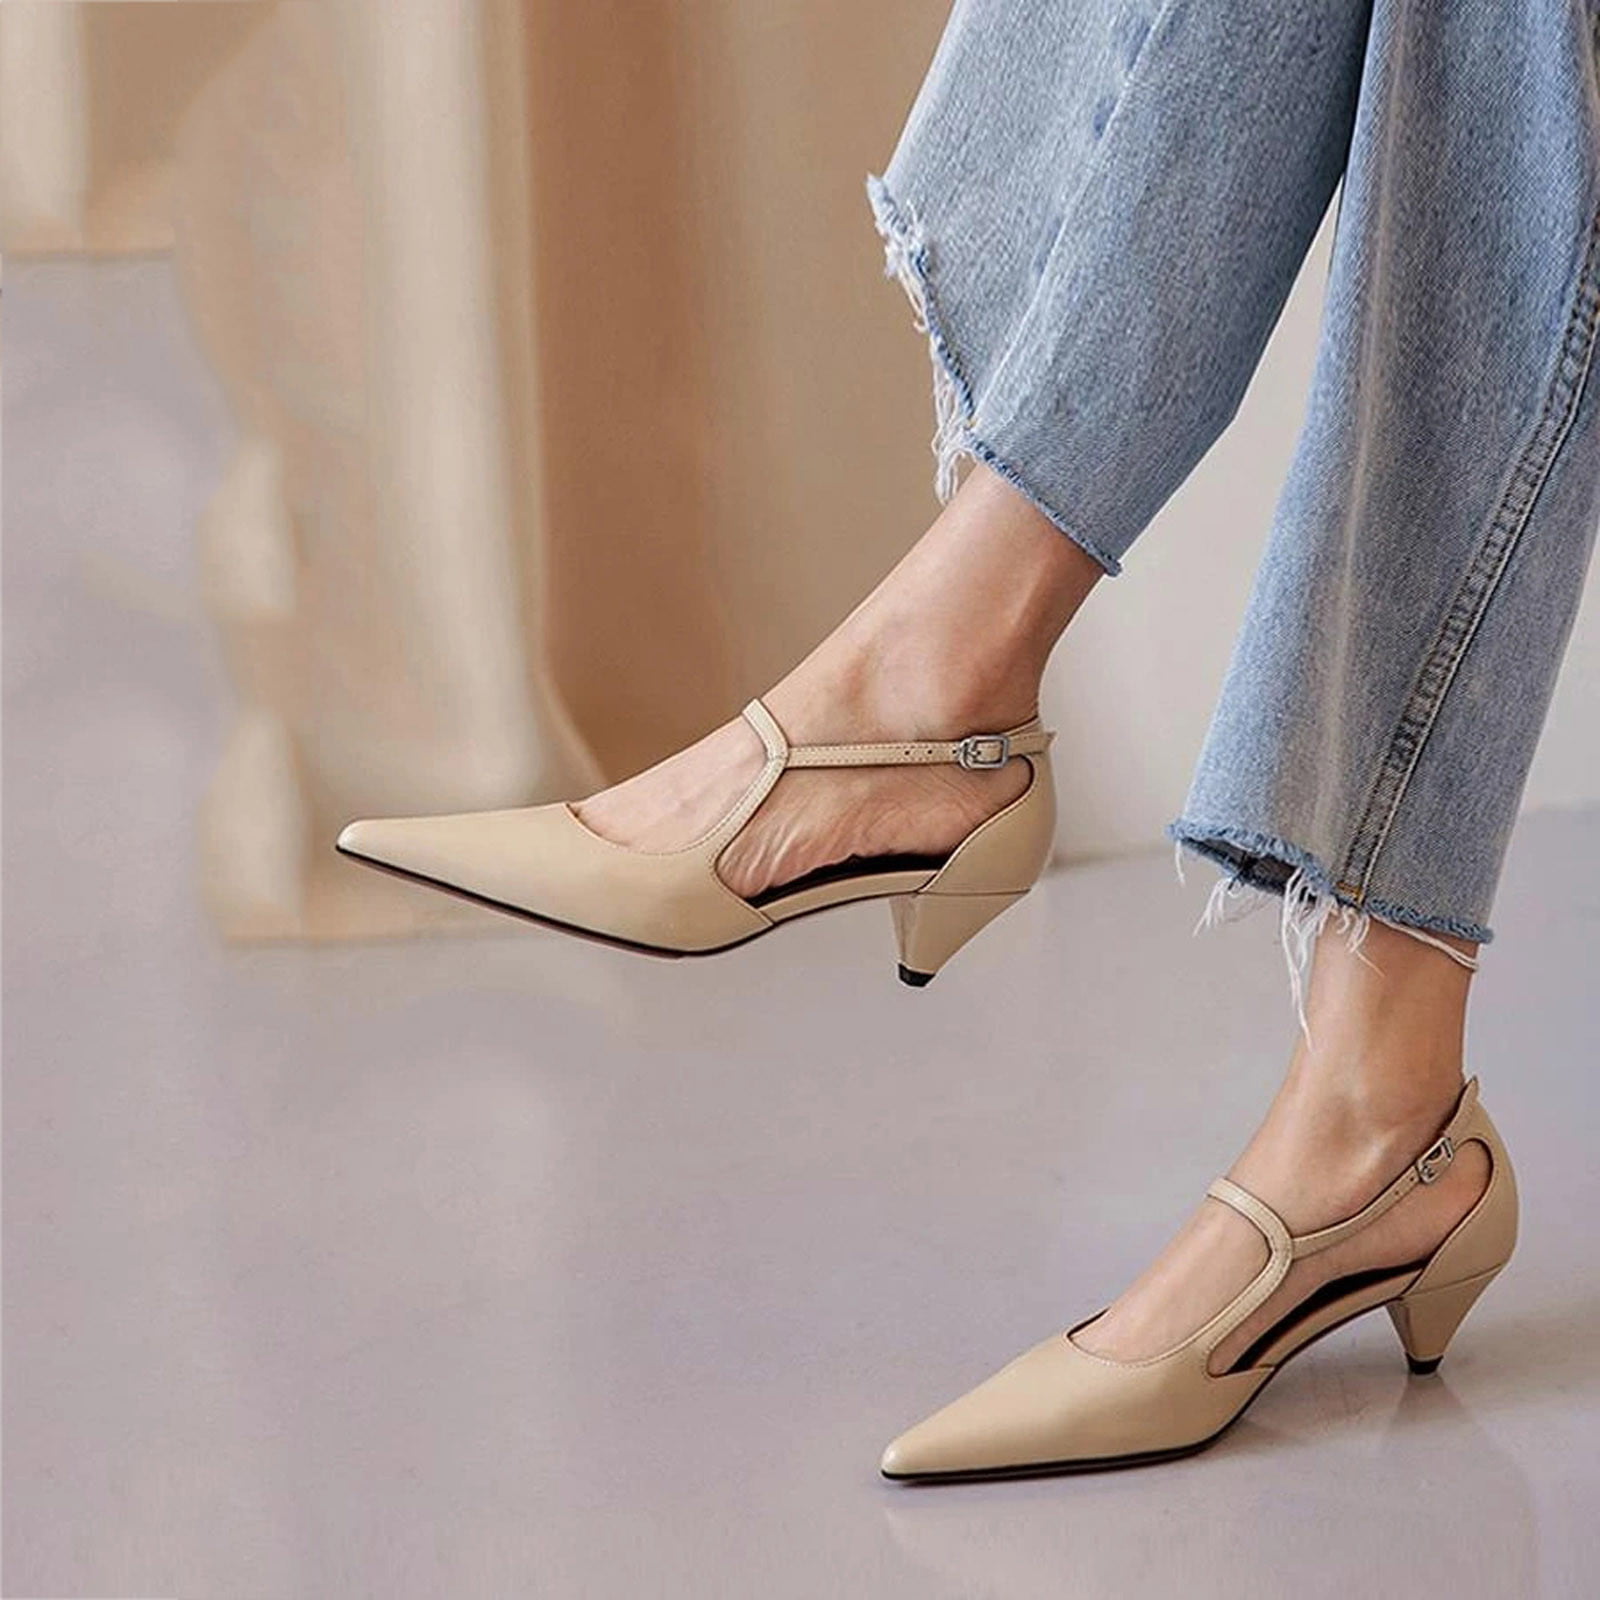 Elegant Burgundy Pearl Low Heel Wedding Shoes 2020 Leather Suede 3 cm Low  Heels / Kitten Heels Pointed Toe